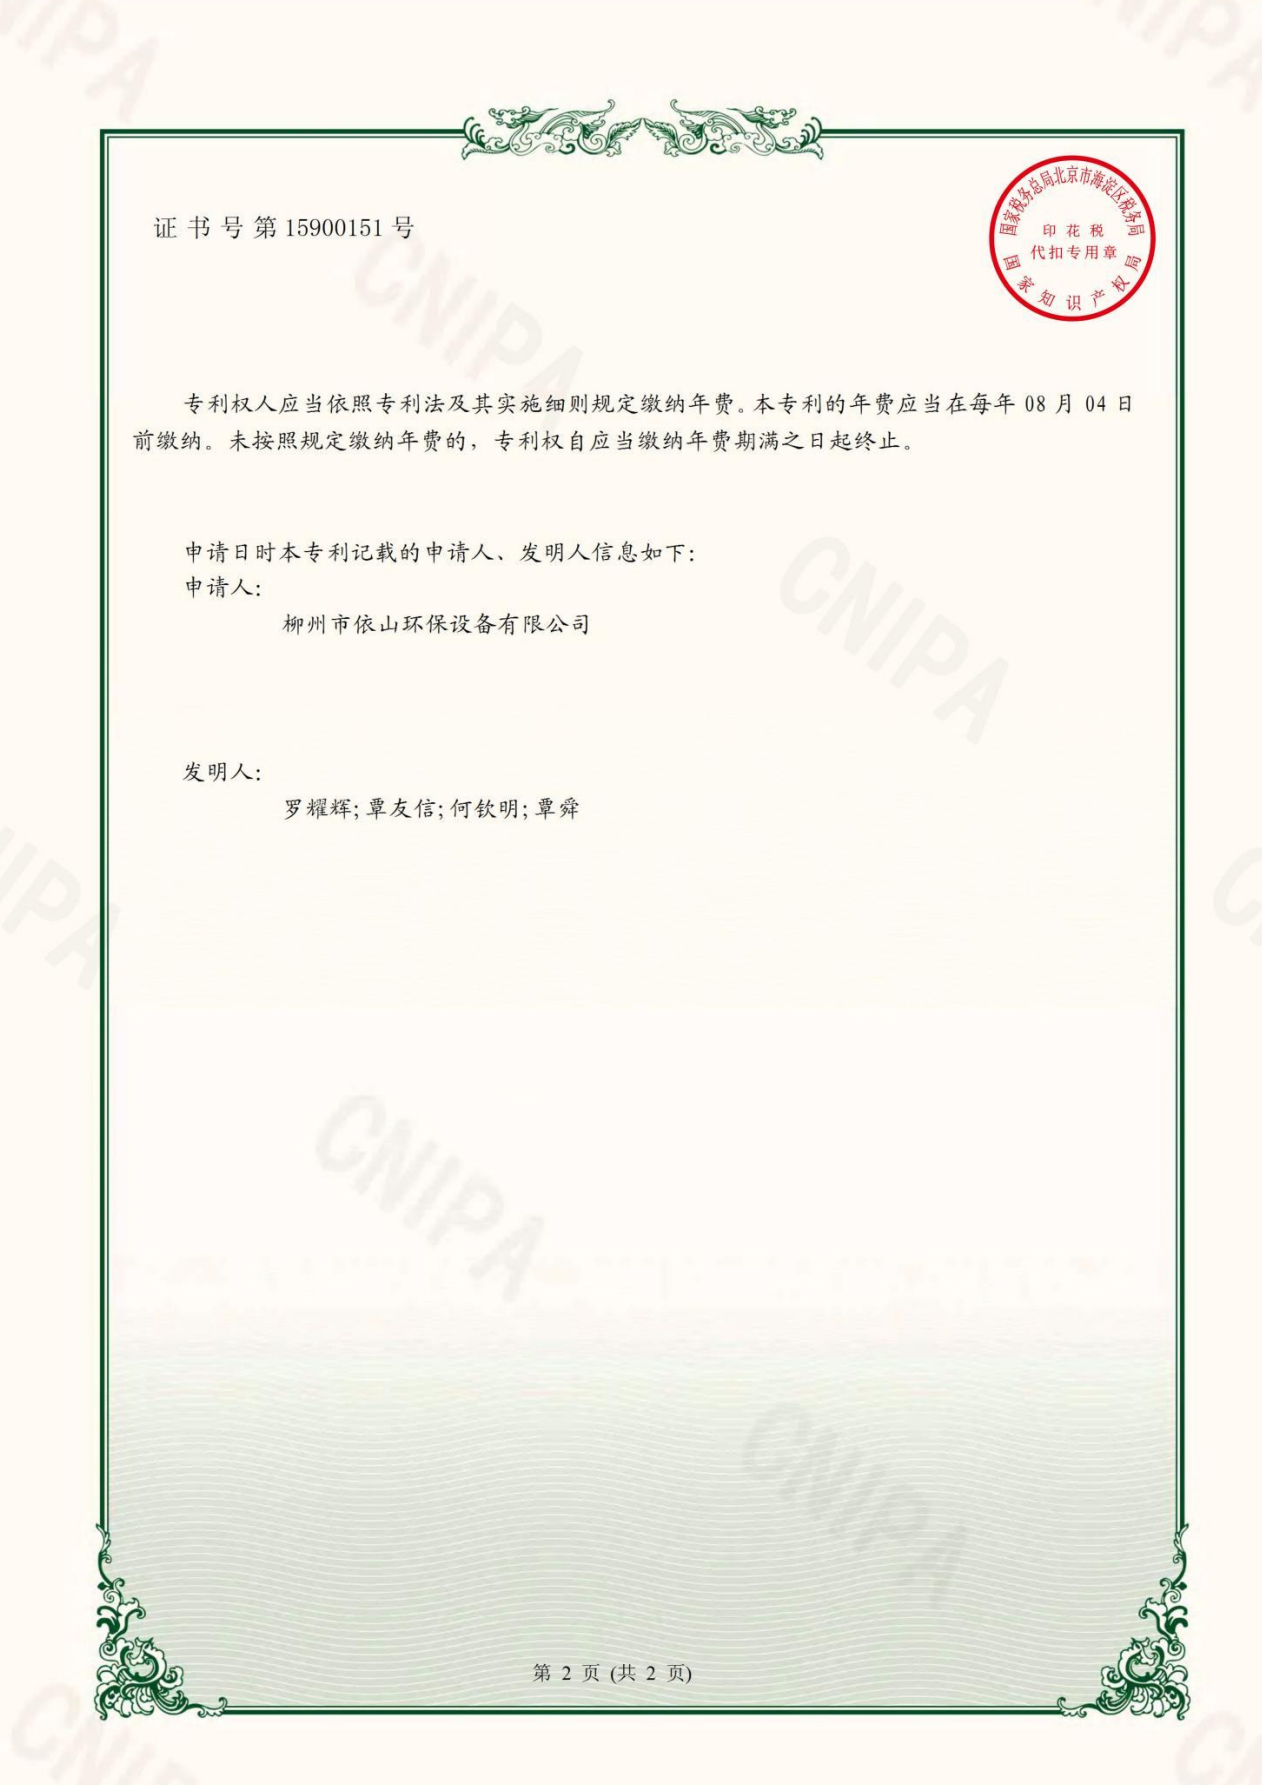 柳州市依山环保设备有限公司资质文件_21.jpg